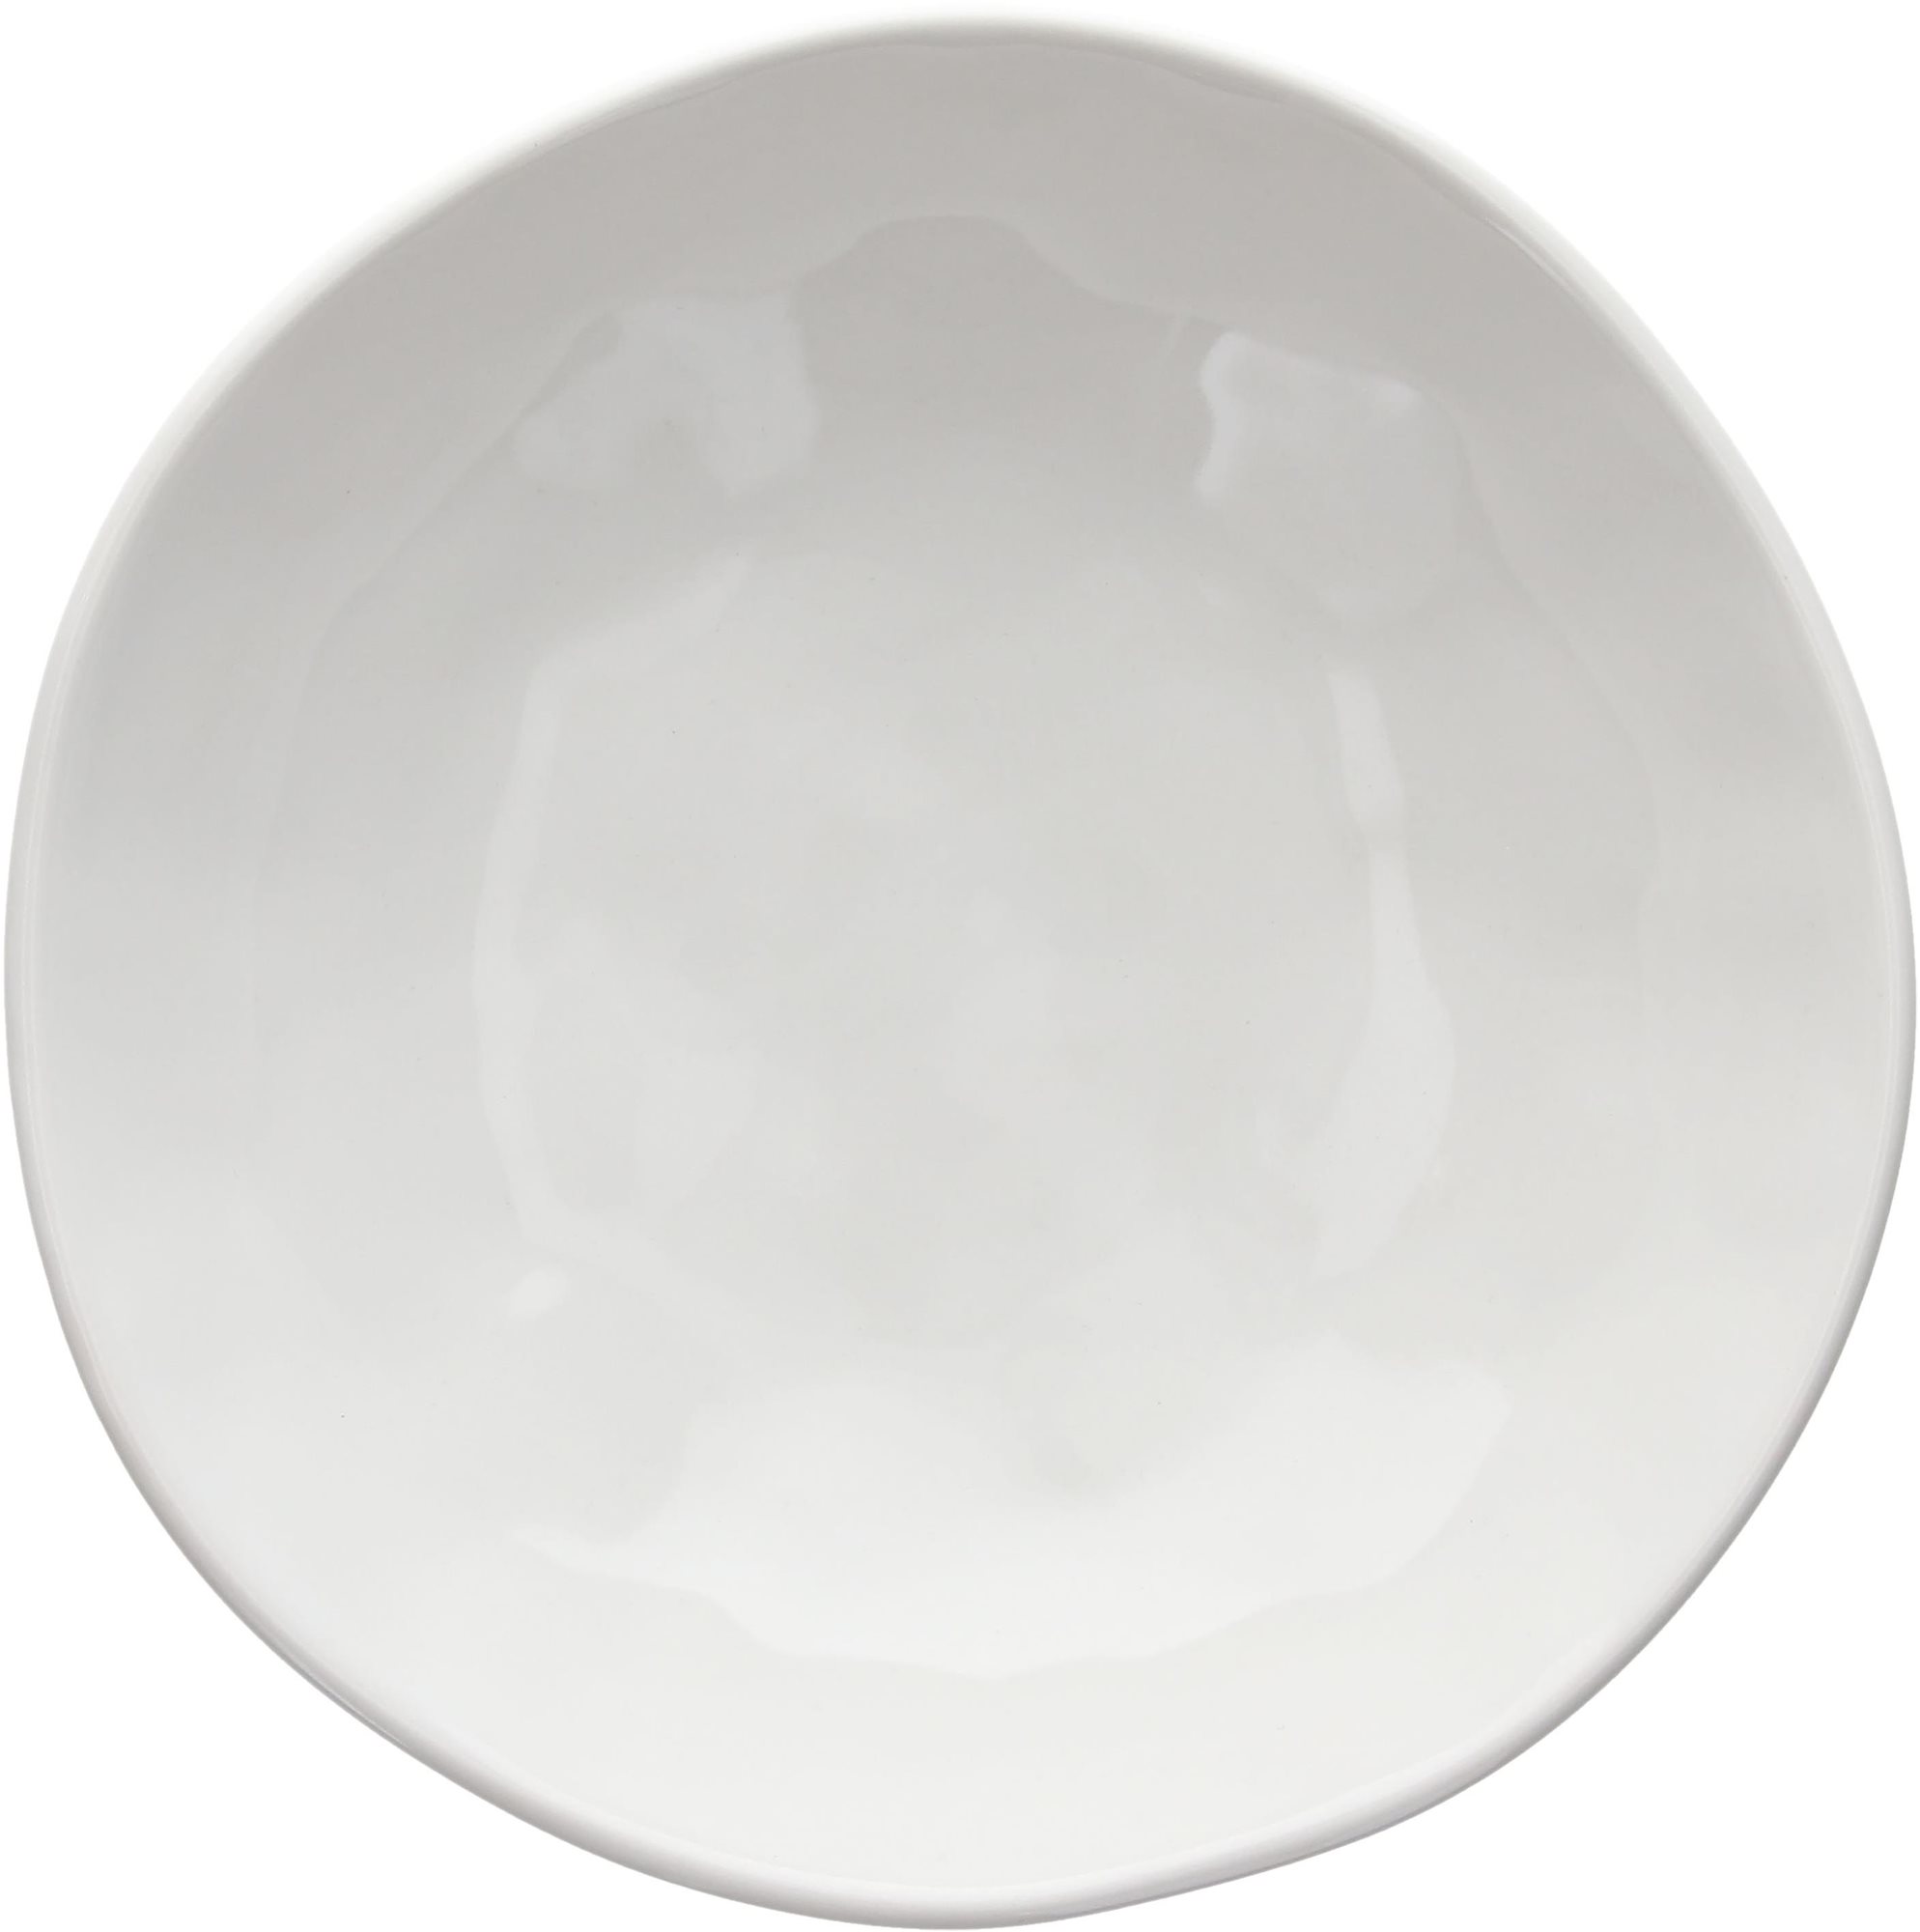 Tognana Sada leveses tányér készlet 6 db 20 cm NORDIK WHITE